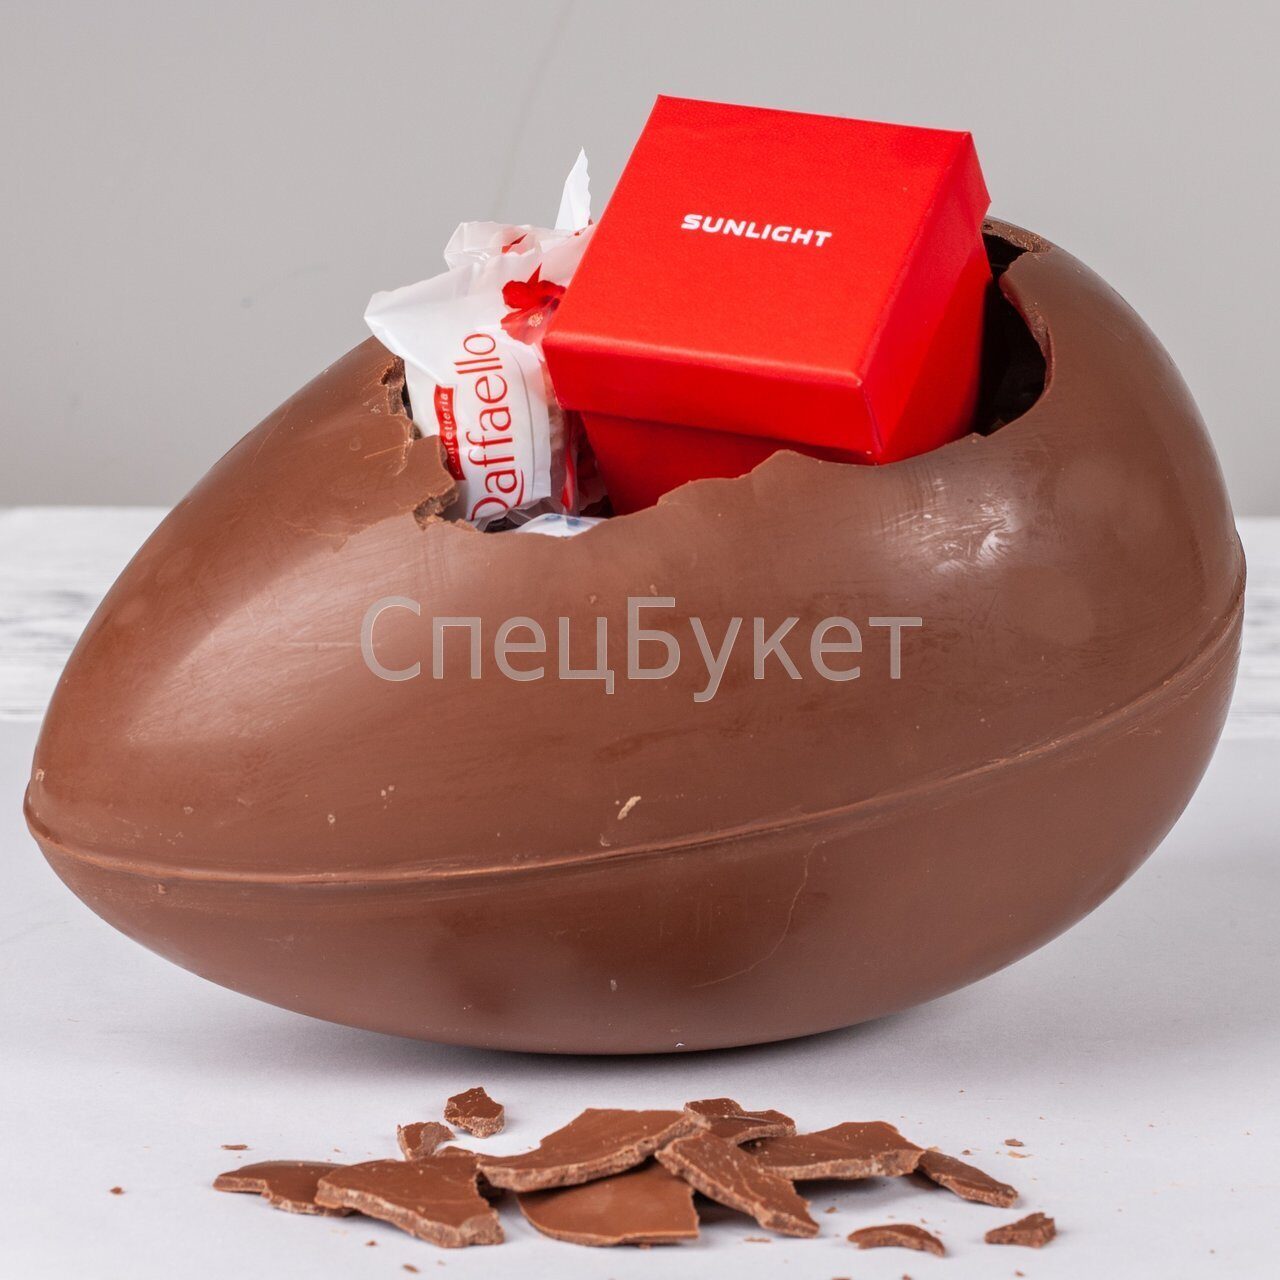 Сюрприз на 45. Игрушка-сюрприз в яйце «мега-сюрприз», 24,5 см 7907175.